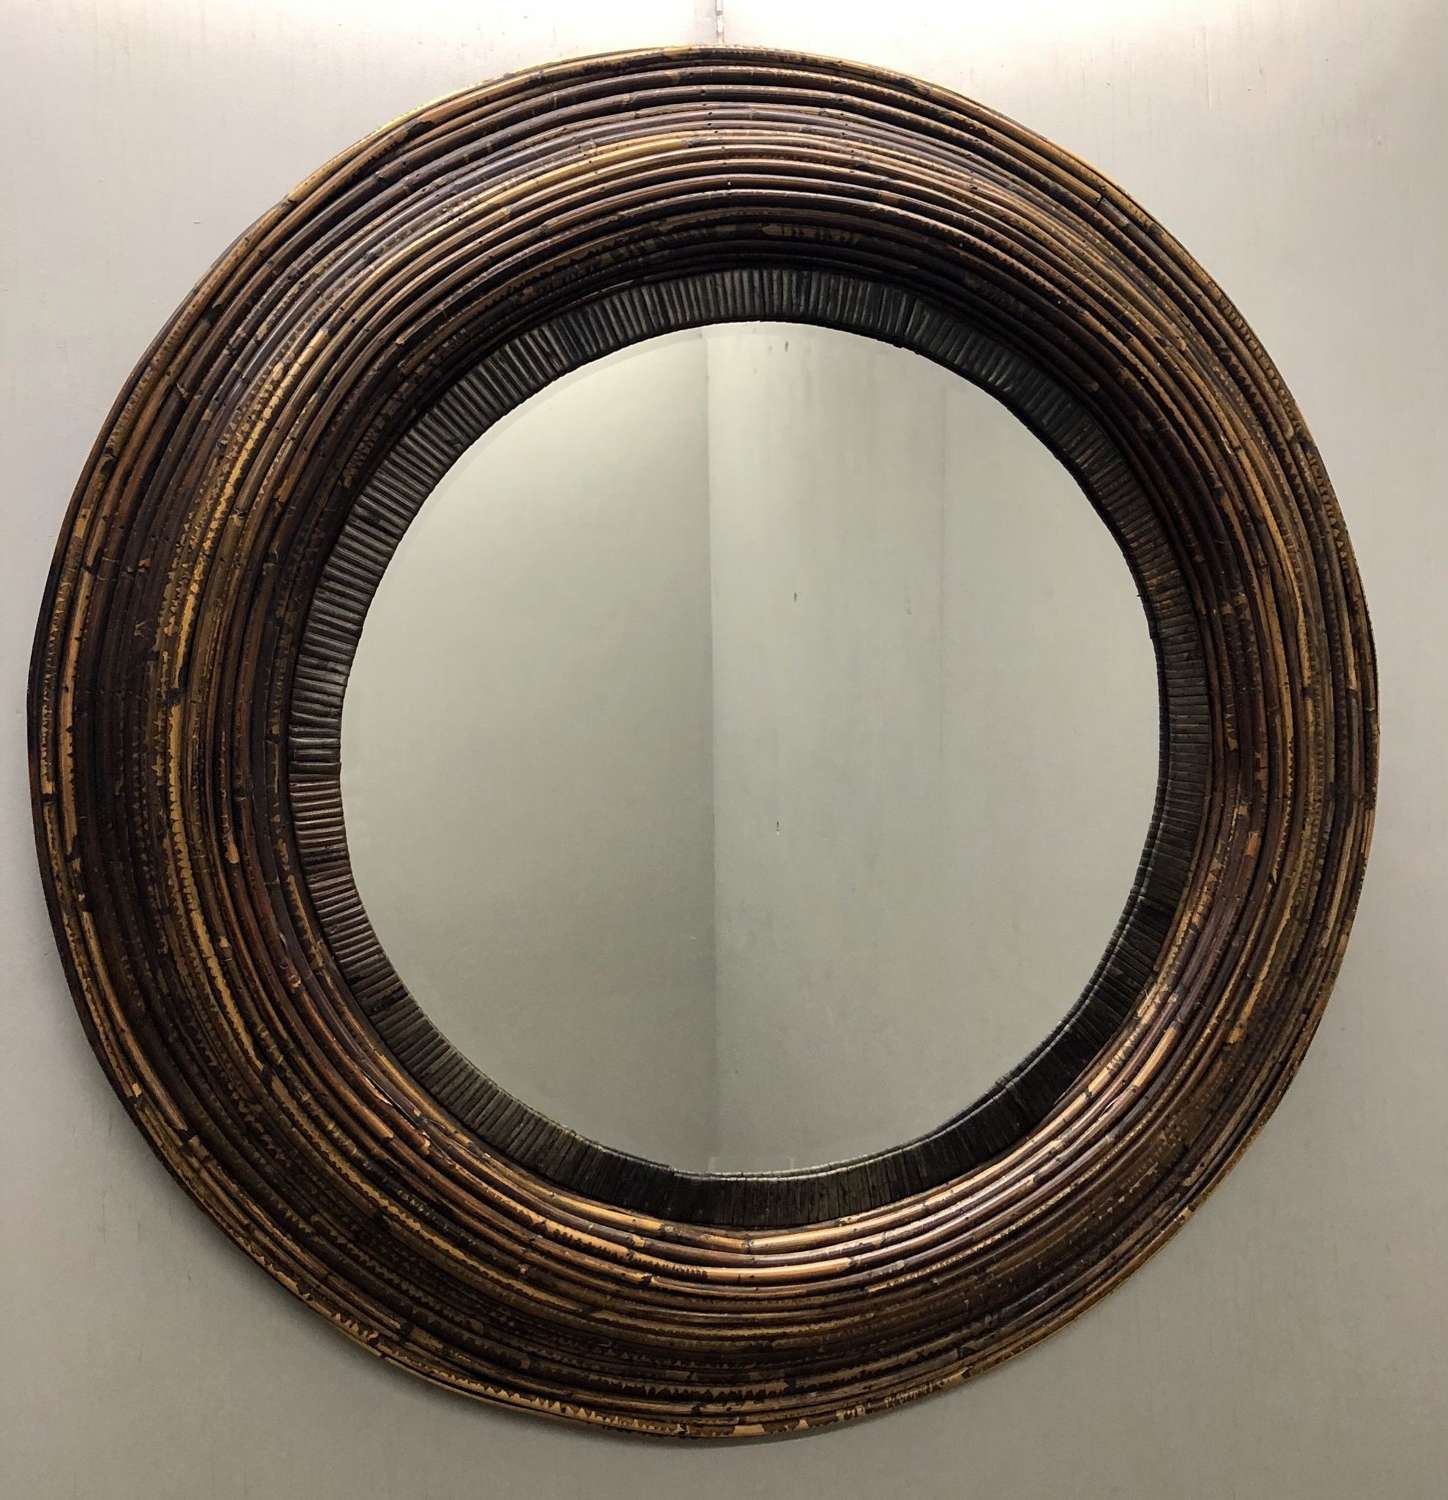 A bamboo cane circular mirror